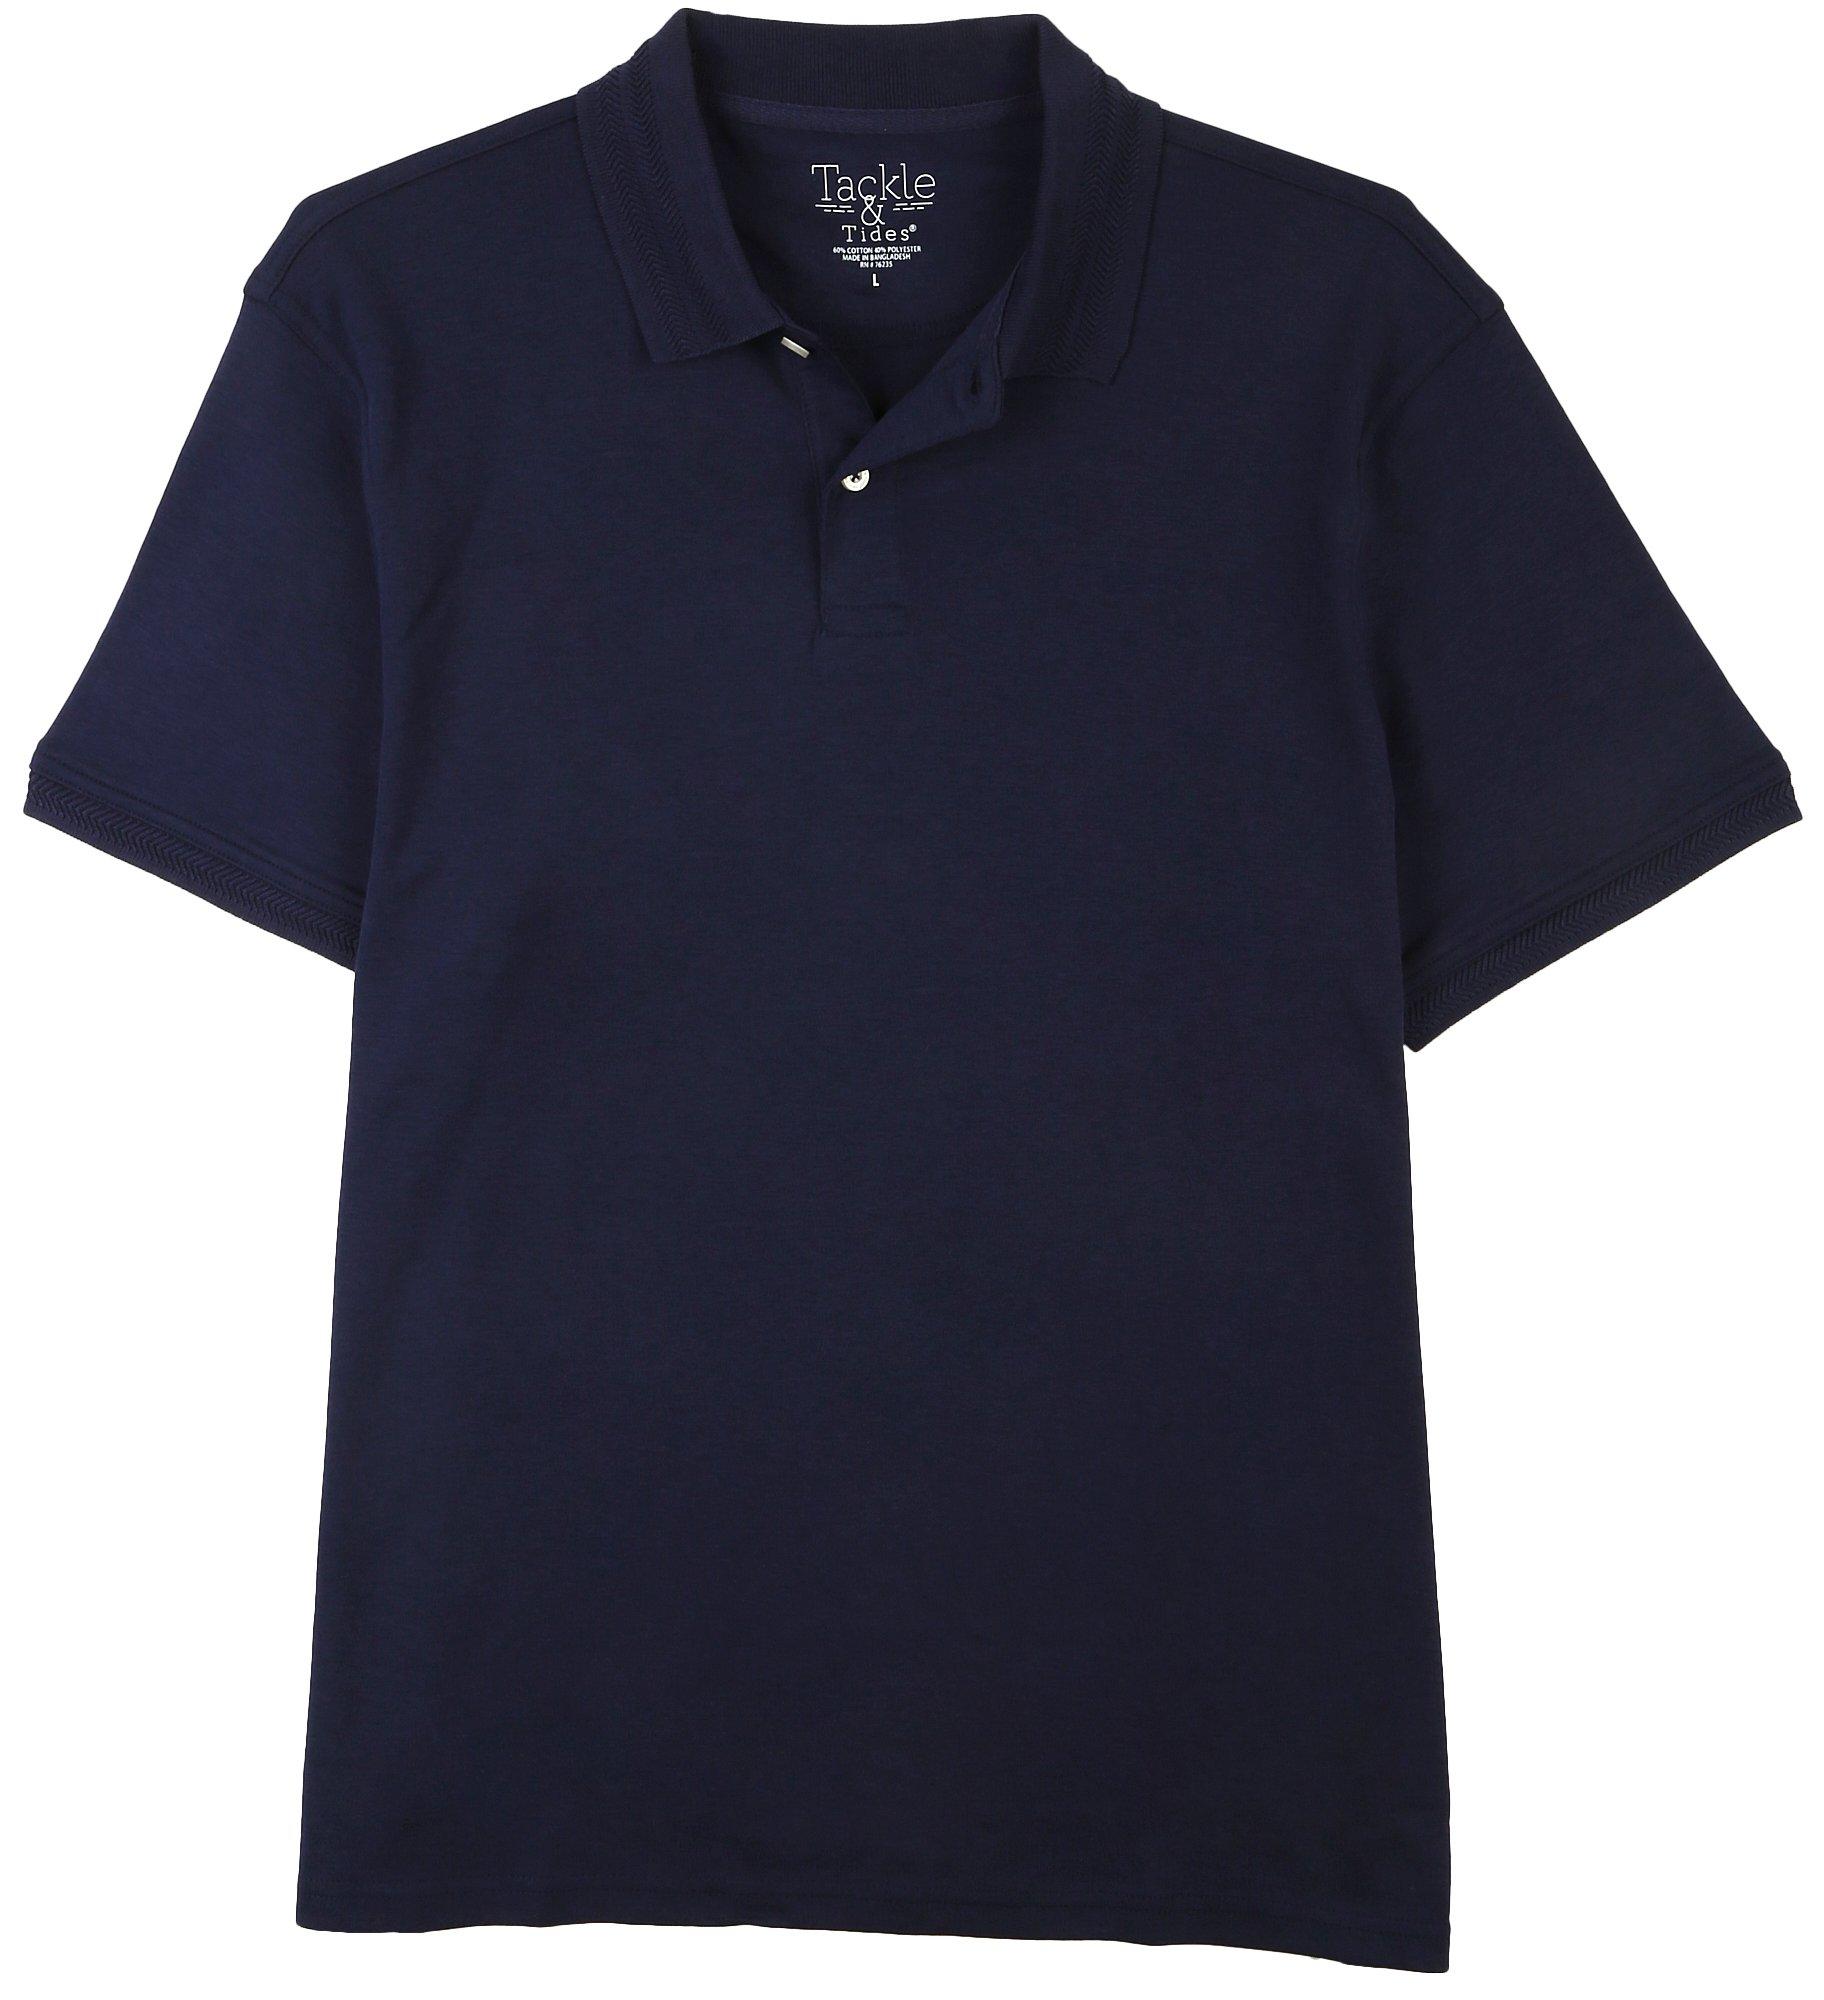 Tackle & Tides Mens Fashion Collar Short Sleeve Polo Shirt